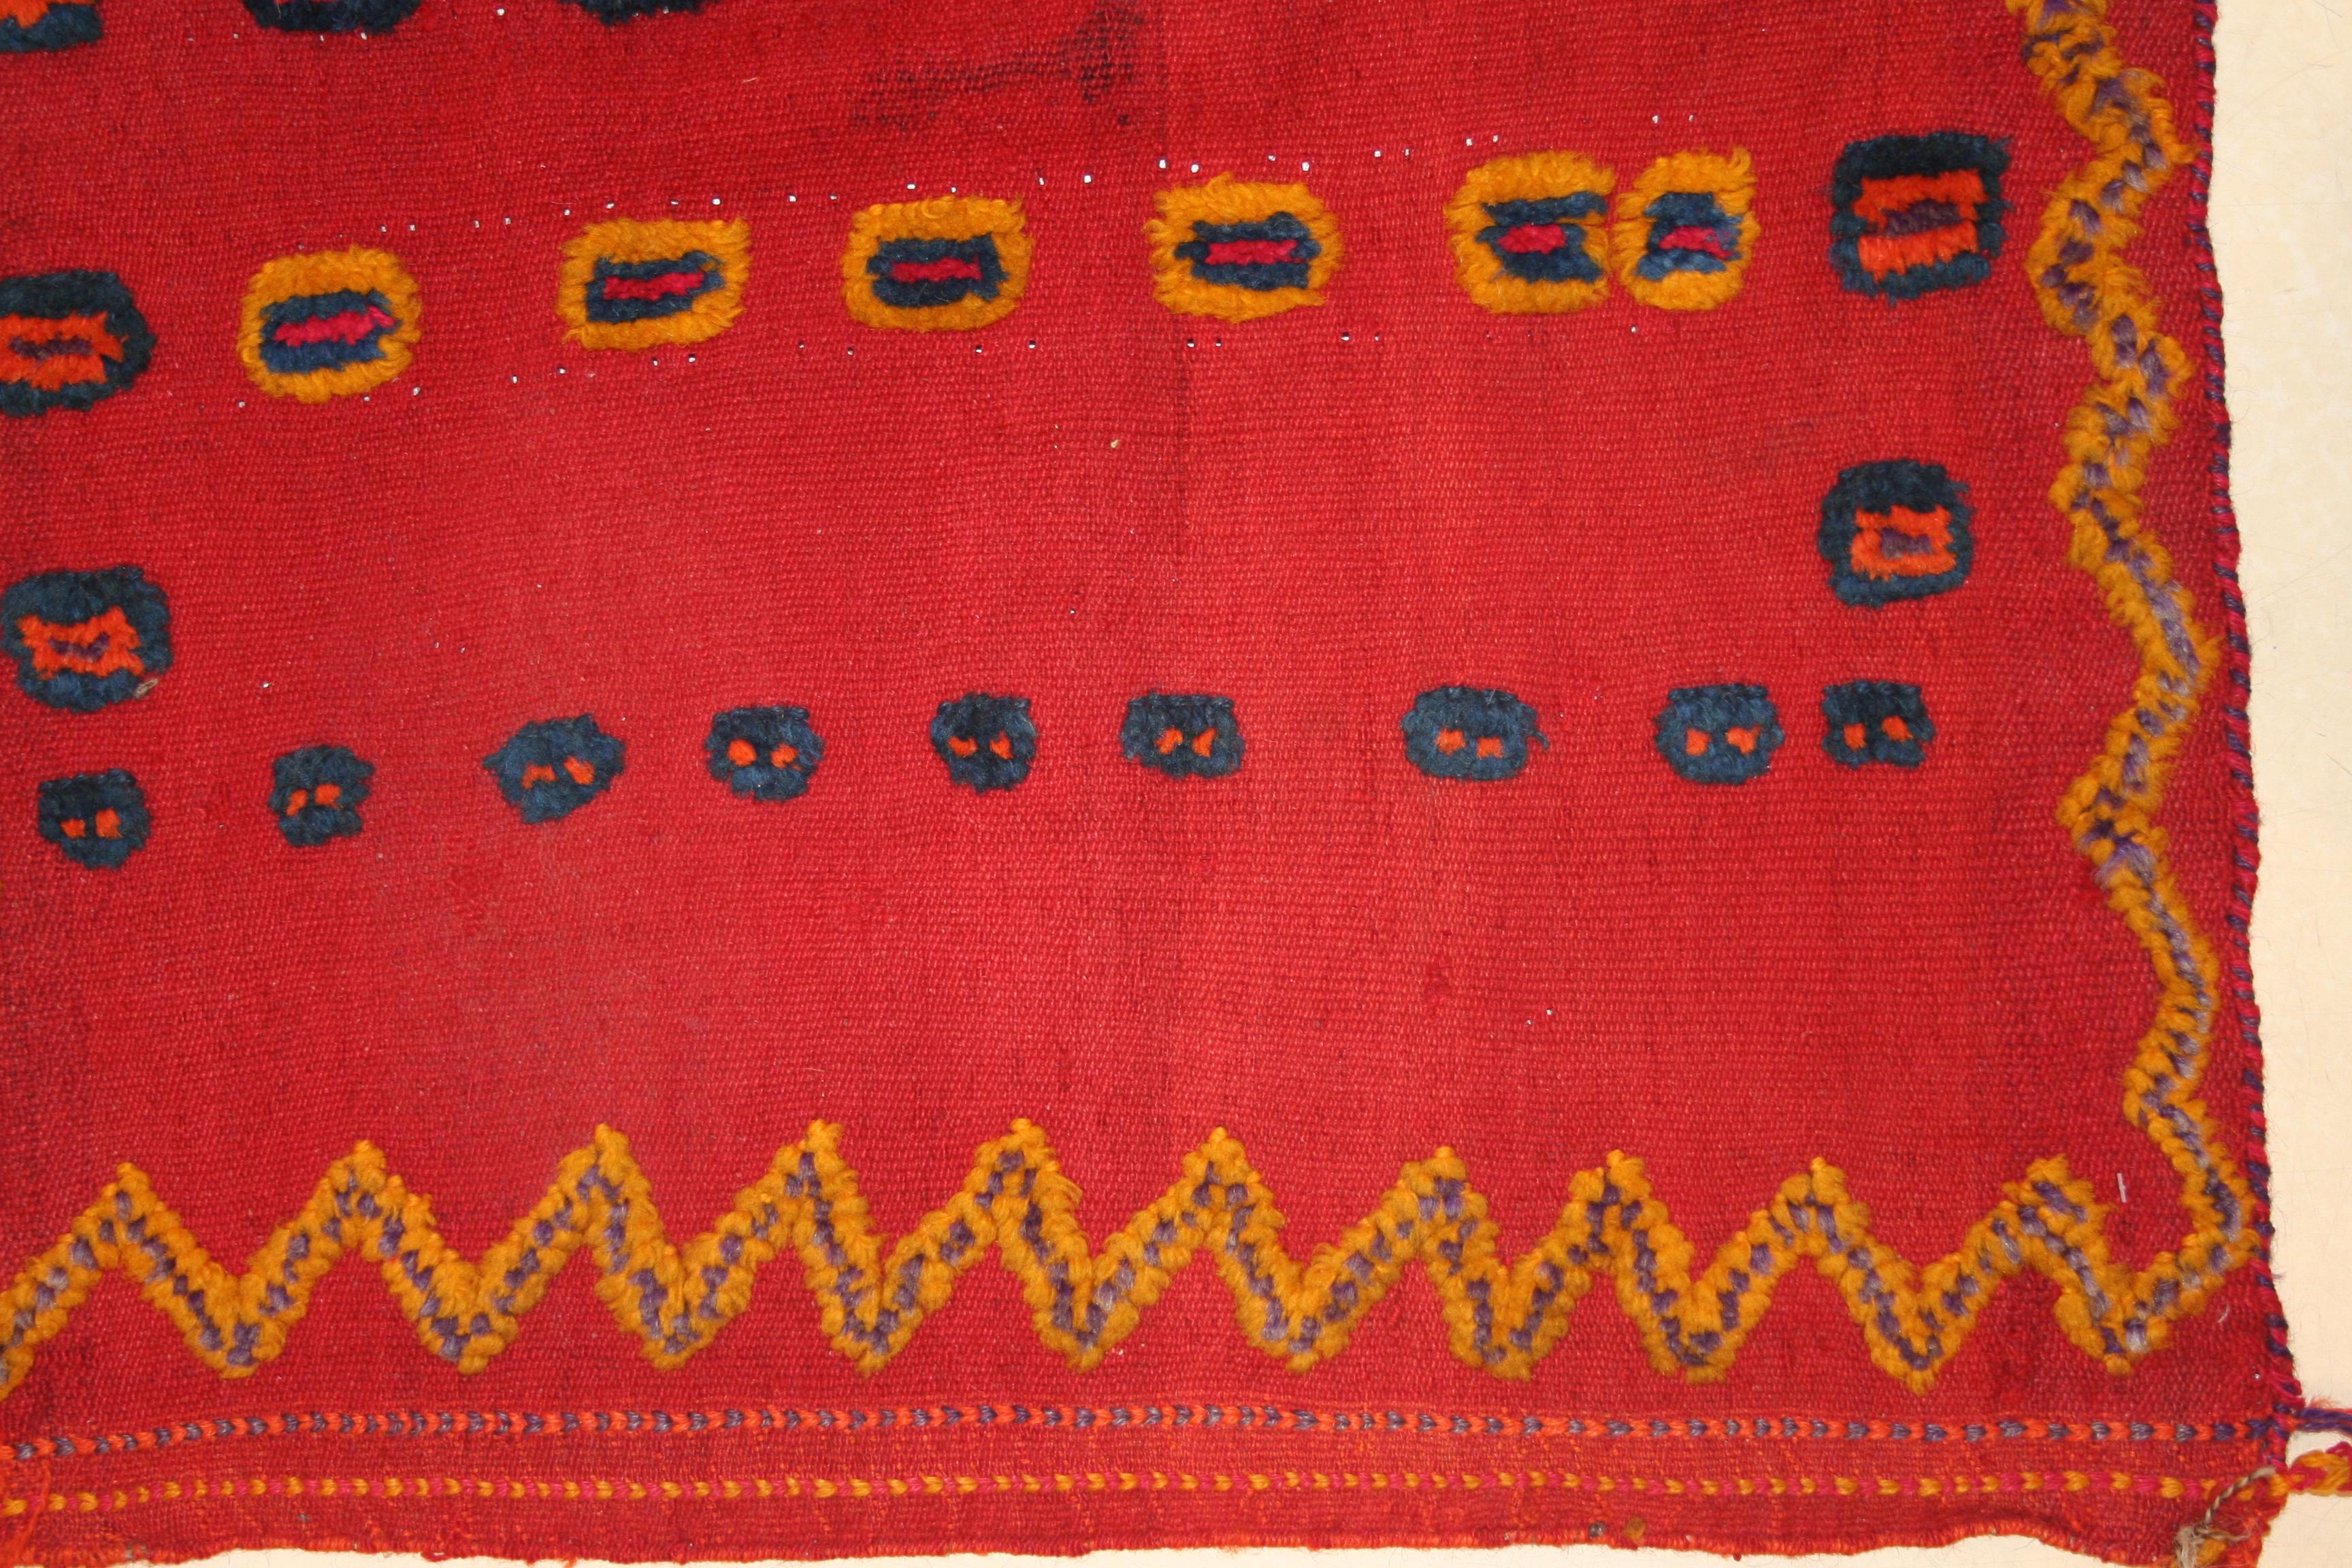 Ein bezauberndes Stammesgeflecht mit einem flach gewebten roten Hintergrund und einem Muster aus polychromen konzentrischen Kreisen, die im Flor verknotet sind und einen Reliefeffekt erzeugen. Sie wurde innerhalb des Stammes als Babywiege verwendet